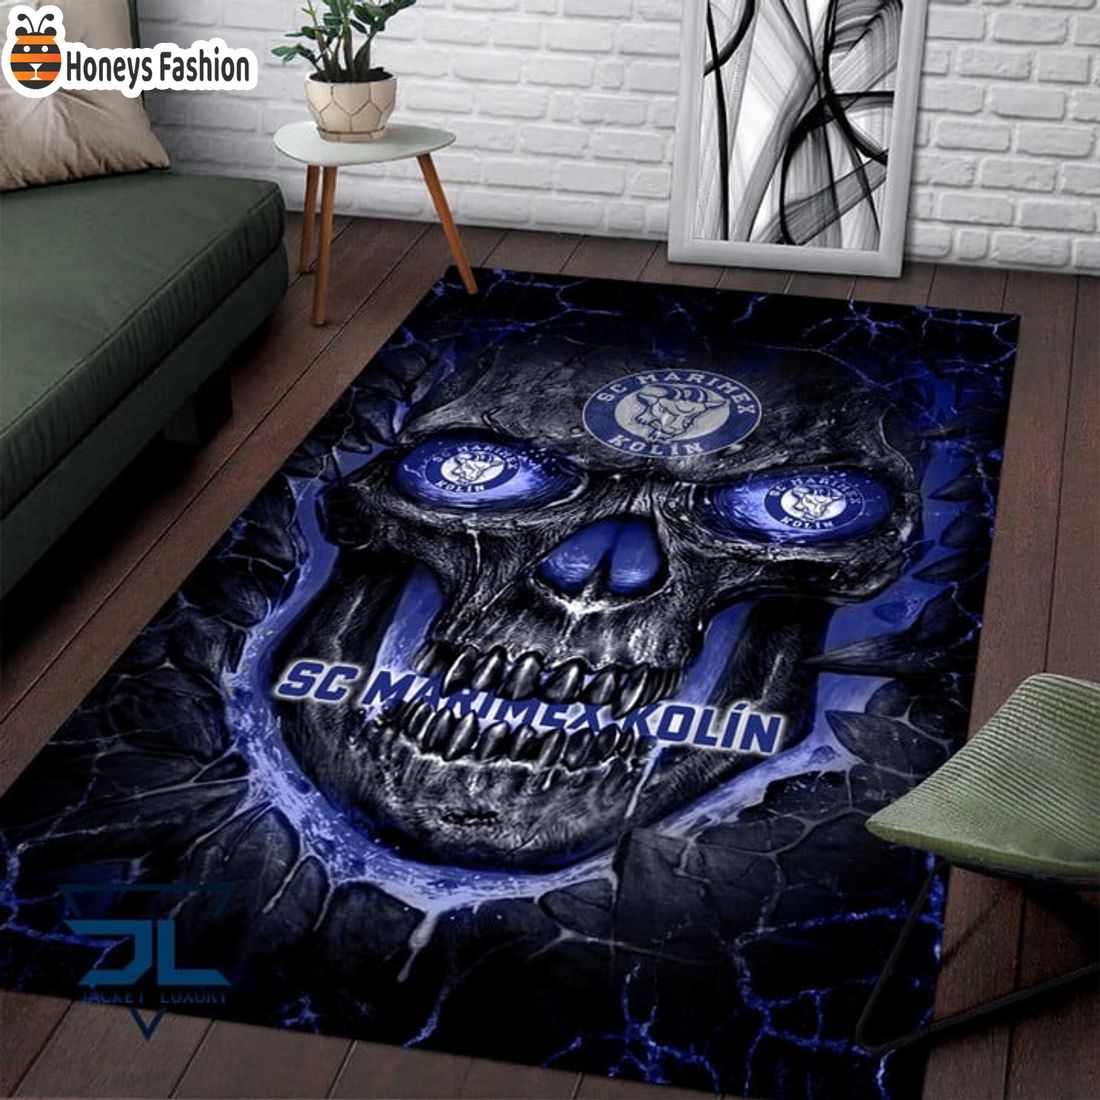 SC Marimex Kolin Skull Rug Carpet